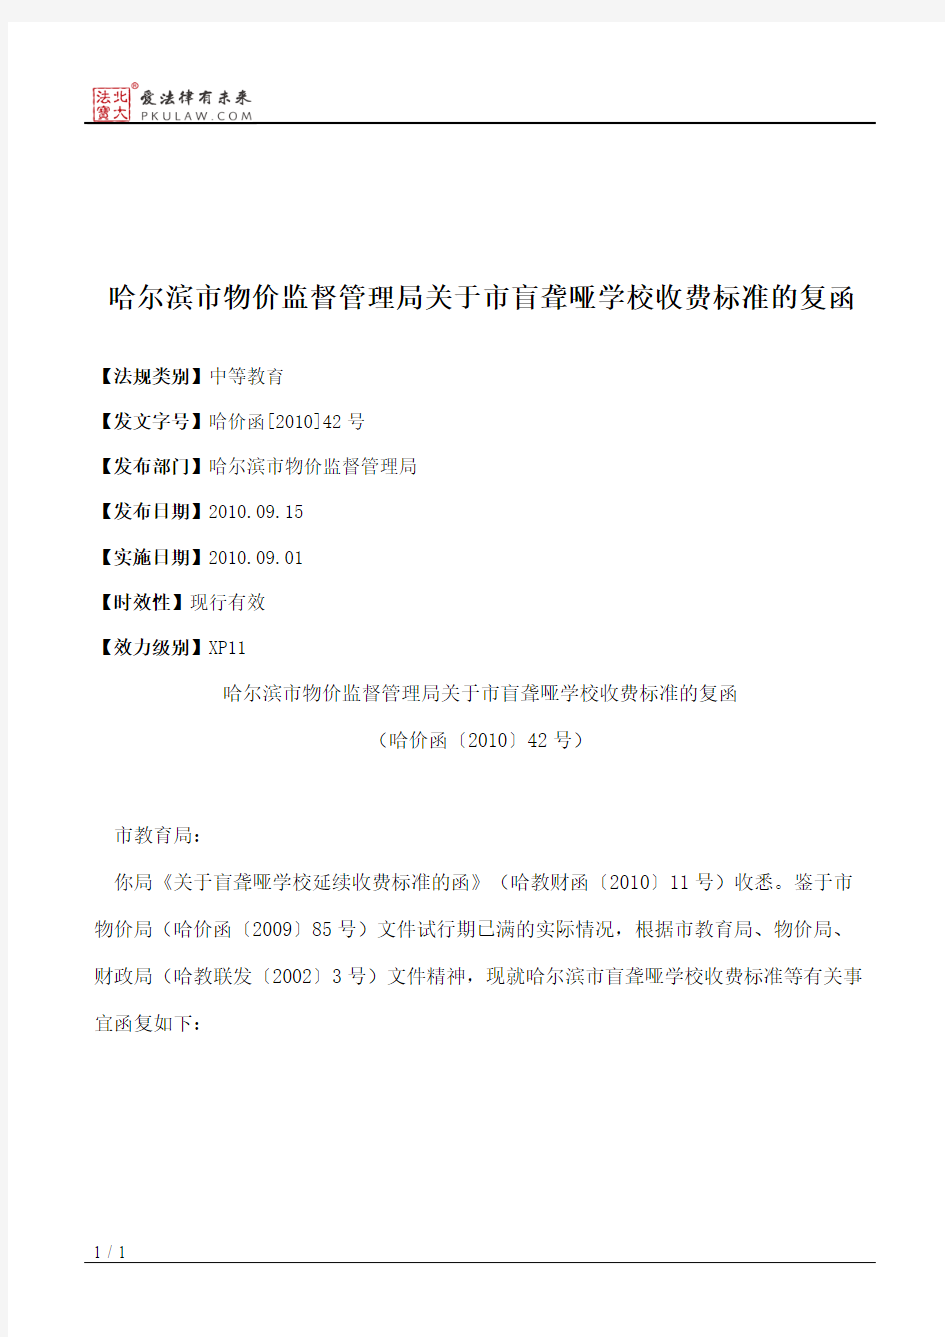 哈尔滨市物价监督管理局关于市盲聋哑学校收费标准的复函